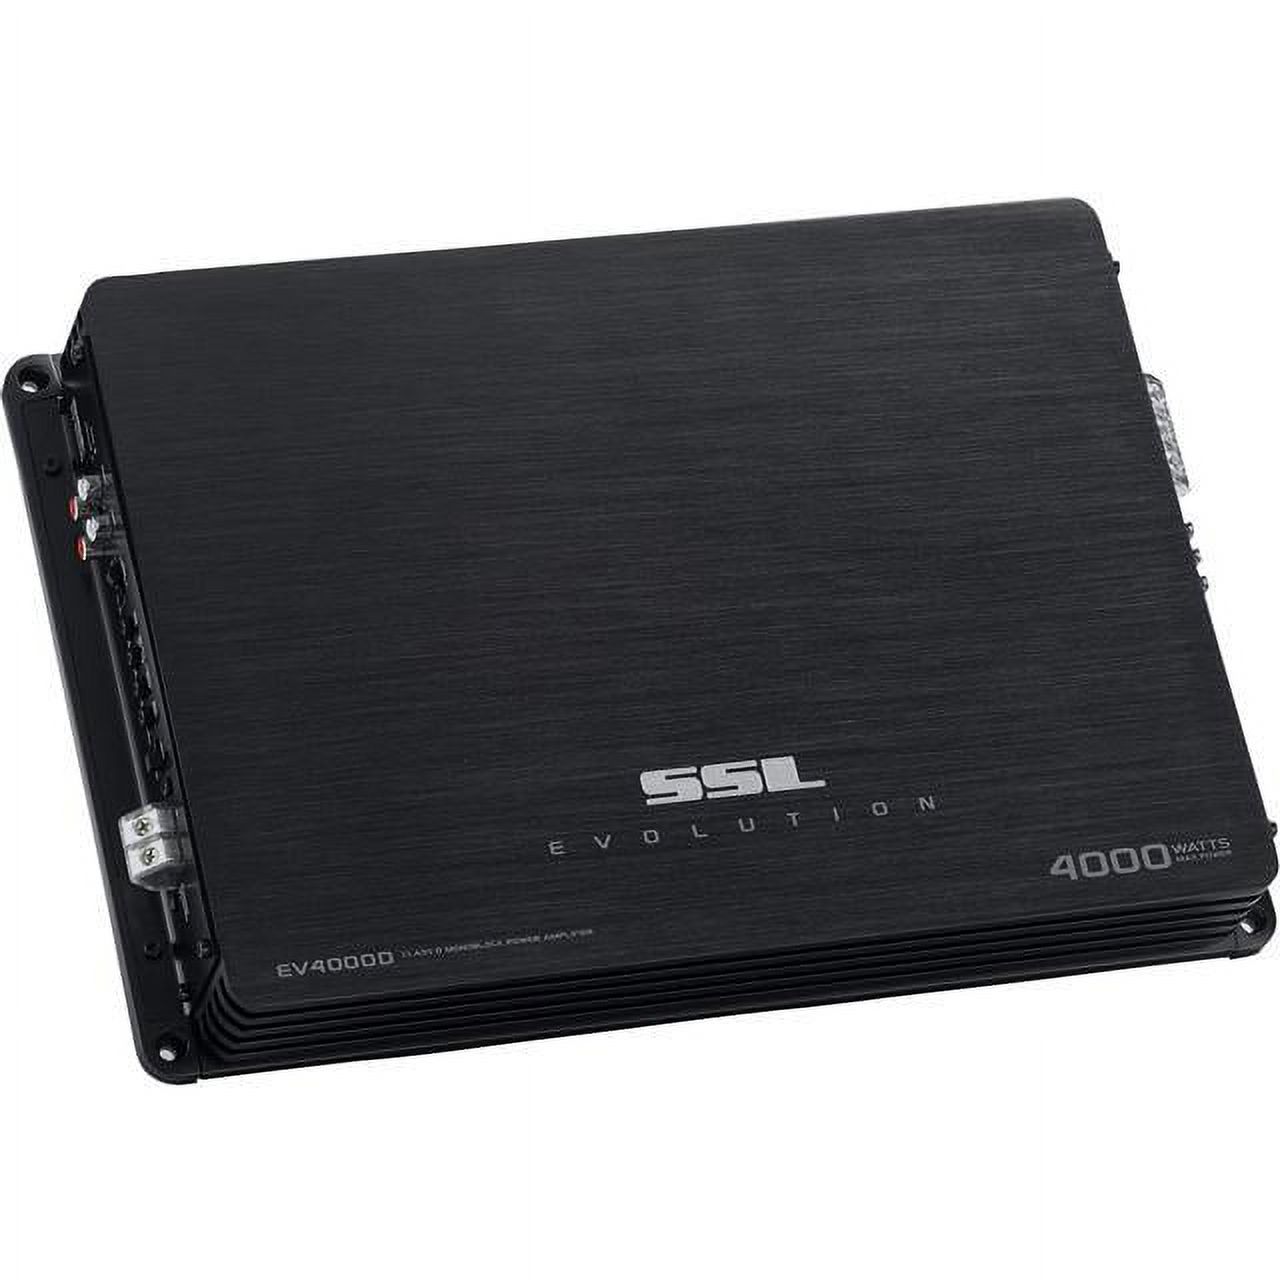 Soundstorm SSL EV4000D 4000W Monoblock Class D Car Audio Amplifier Power Amp - image 1 of 2